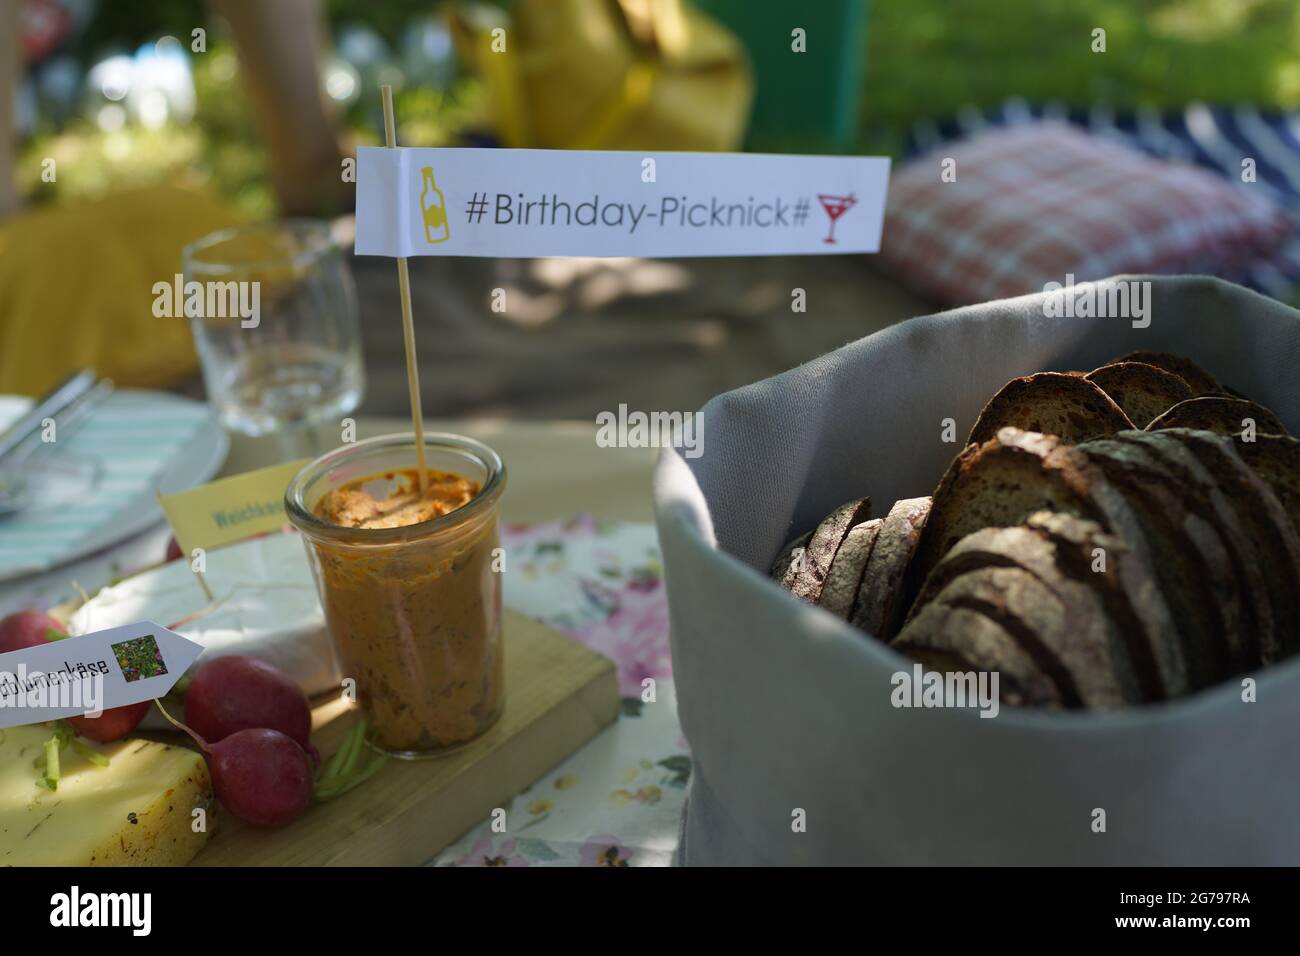 Birthday Picknick draußen im Sommer, Party, Brunch, Essen, Frühstück im Garten Stock Photo